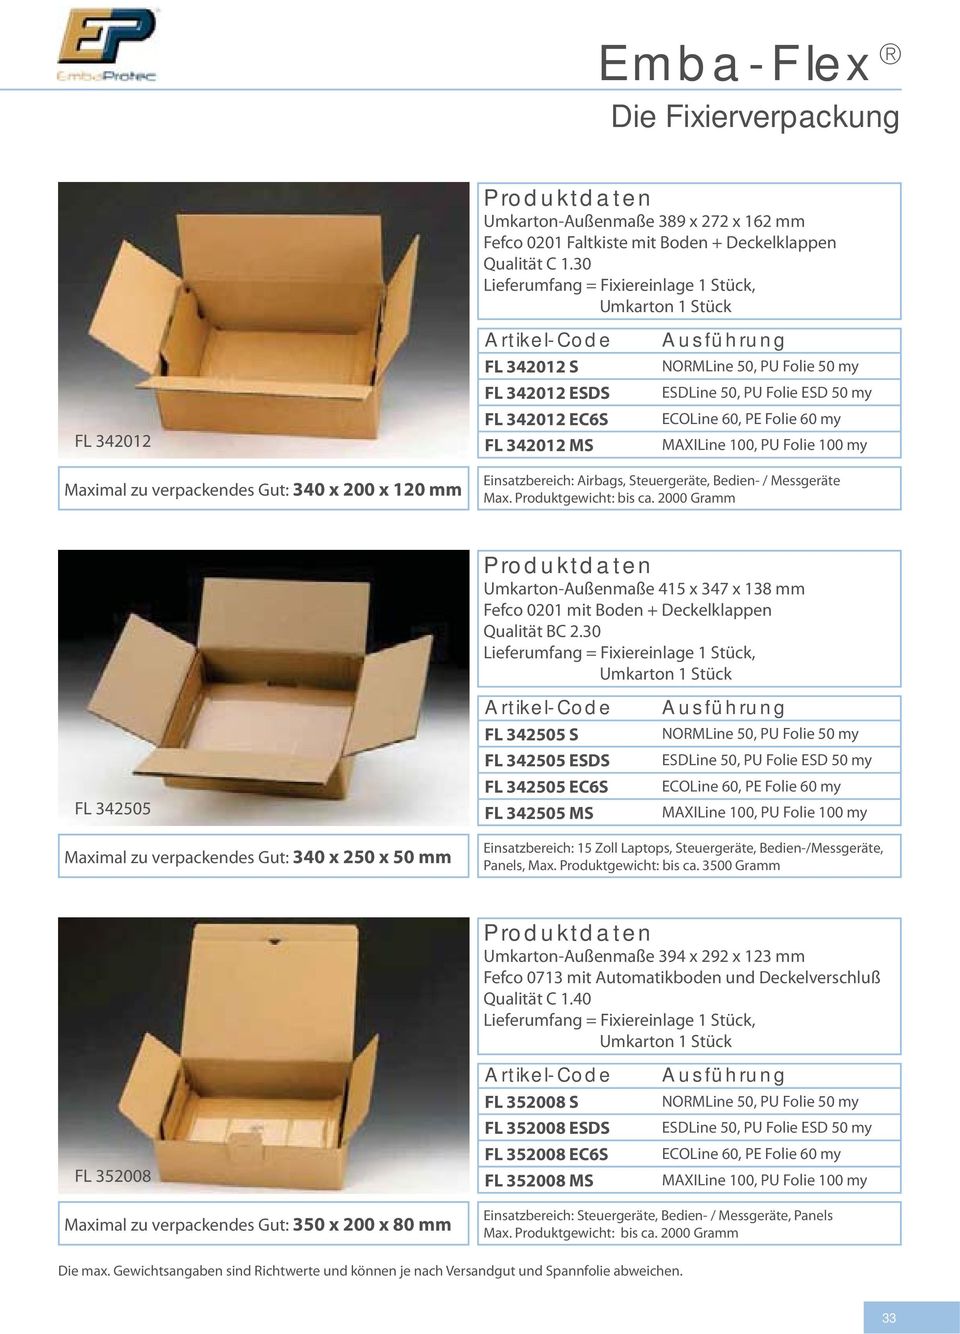 Produktgewicht: bis ca. 2000 Gramm Umkarton-Außenmaße 415 x 347 x 138 mm Fefco 0201 mit Boden + Deckelklappen Qualität BC 2.